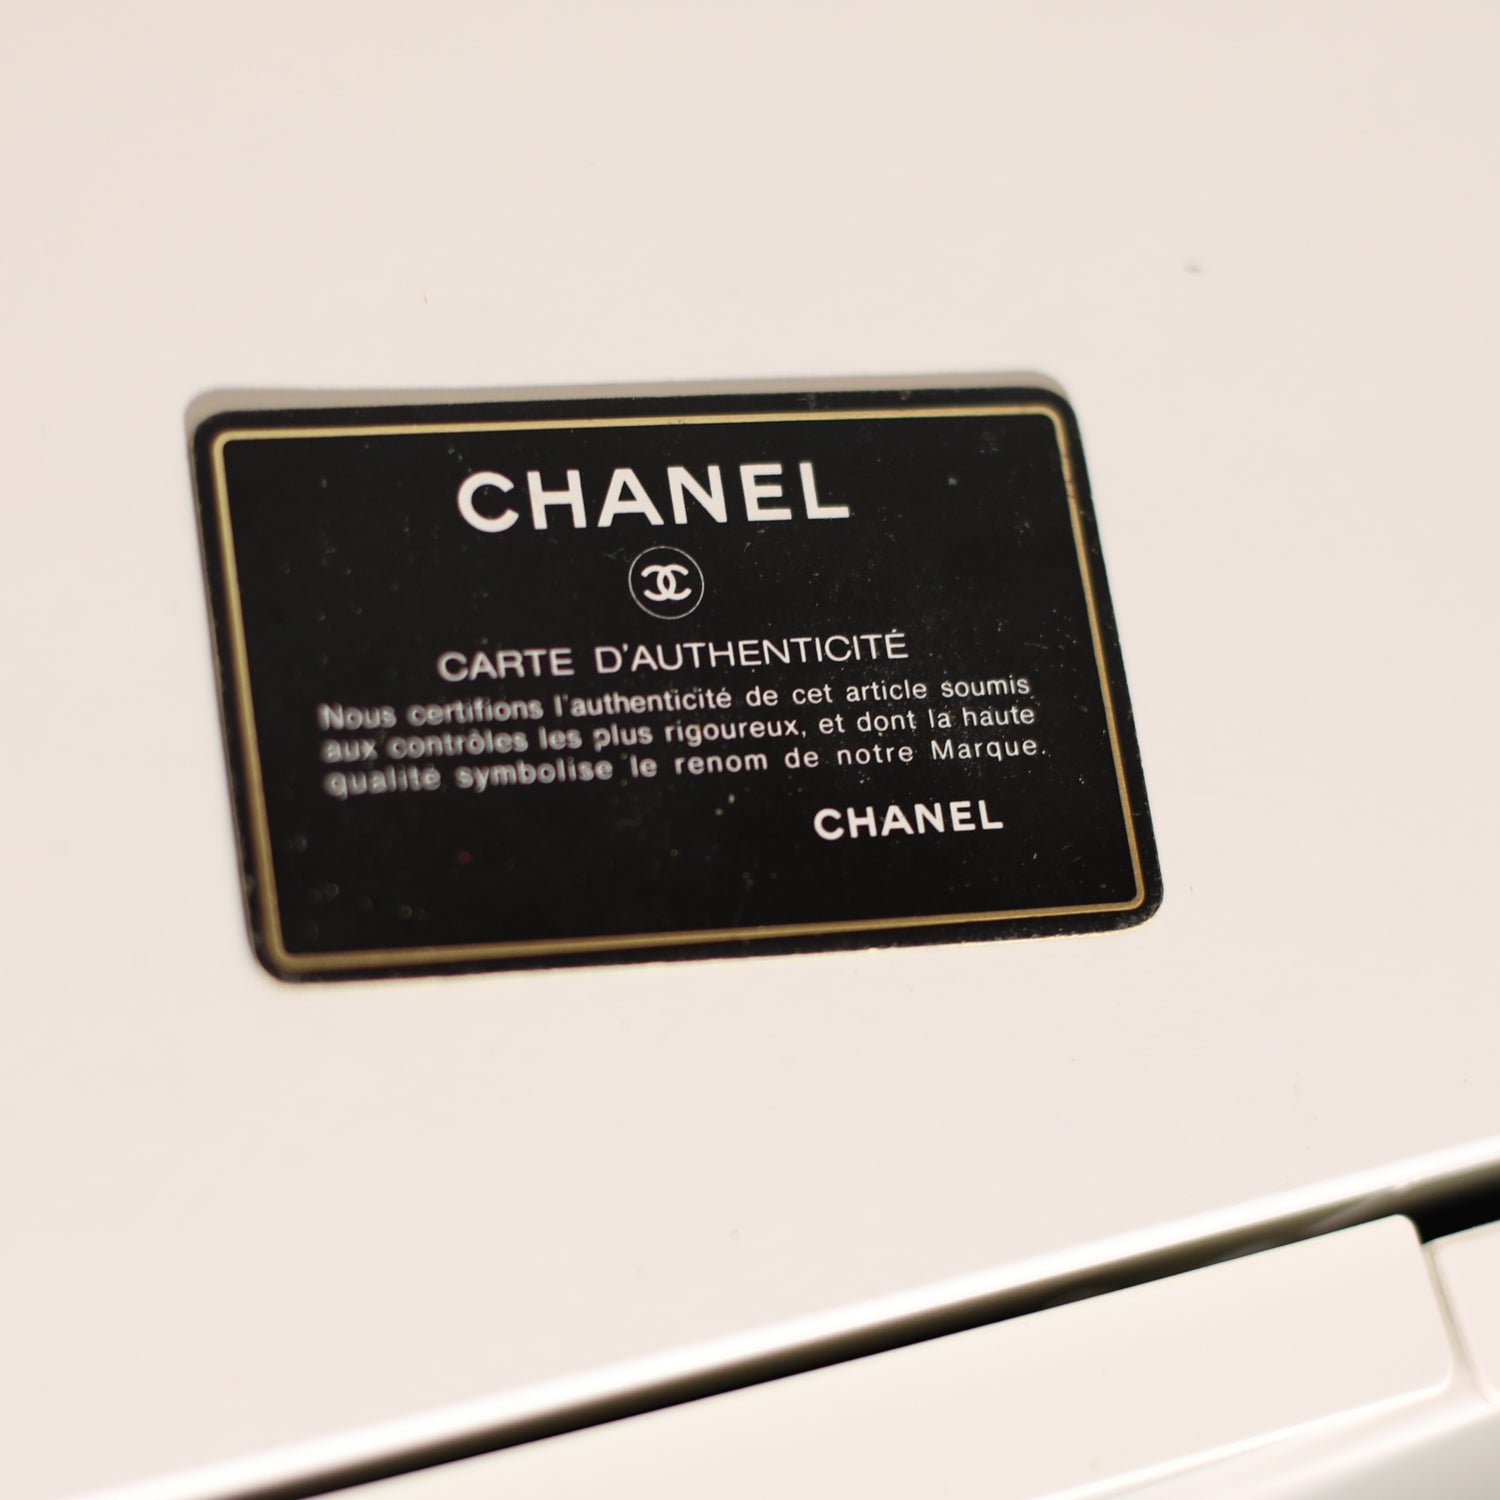 Vintage Chanel Beige Briefcase